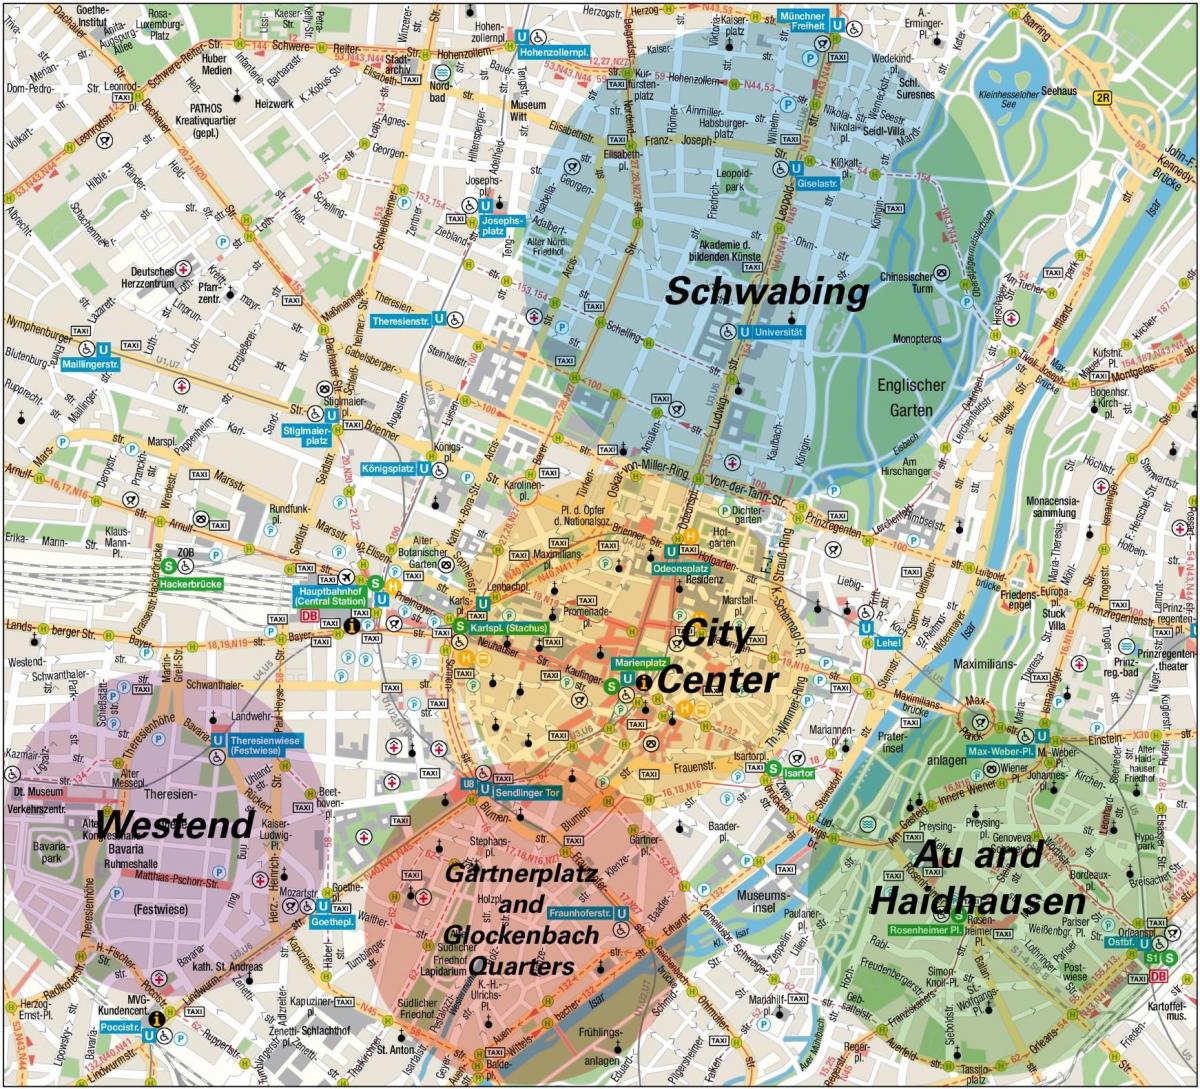 Карта окрестностей Мюнхена